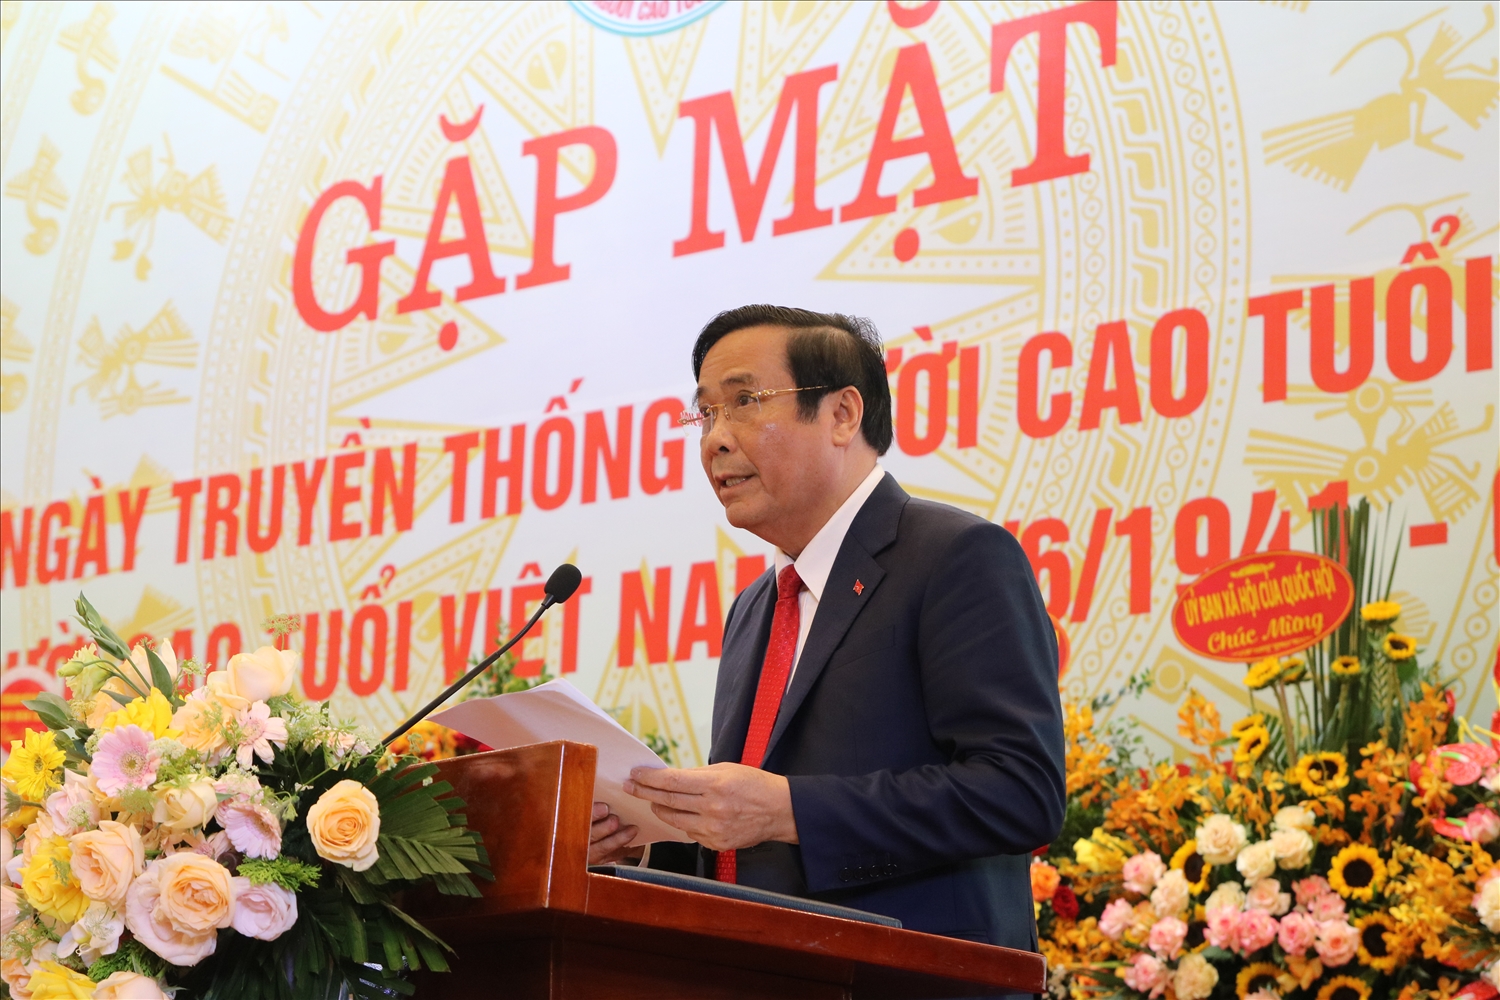 Chủ tịch Hội NCT Việt Nam Nguyễn Thanh Bình phát biểu tại buổi gặp mặt